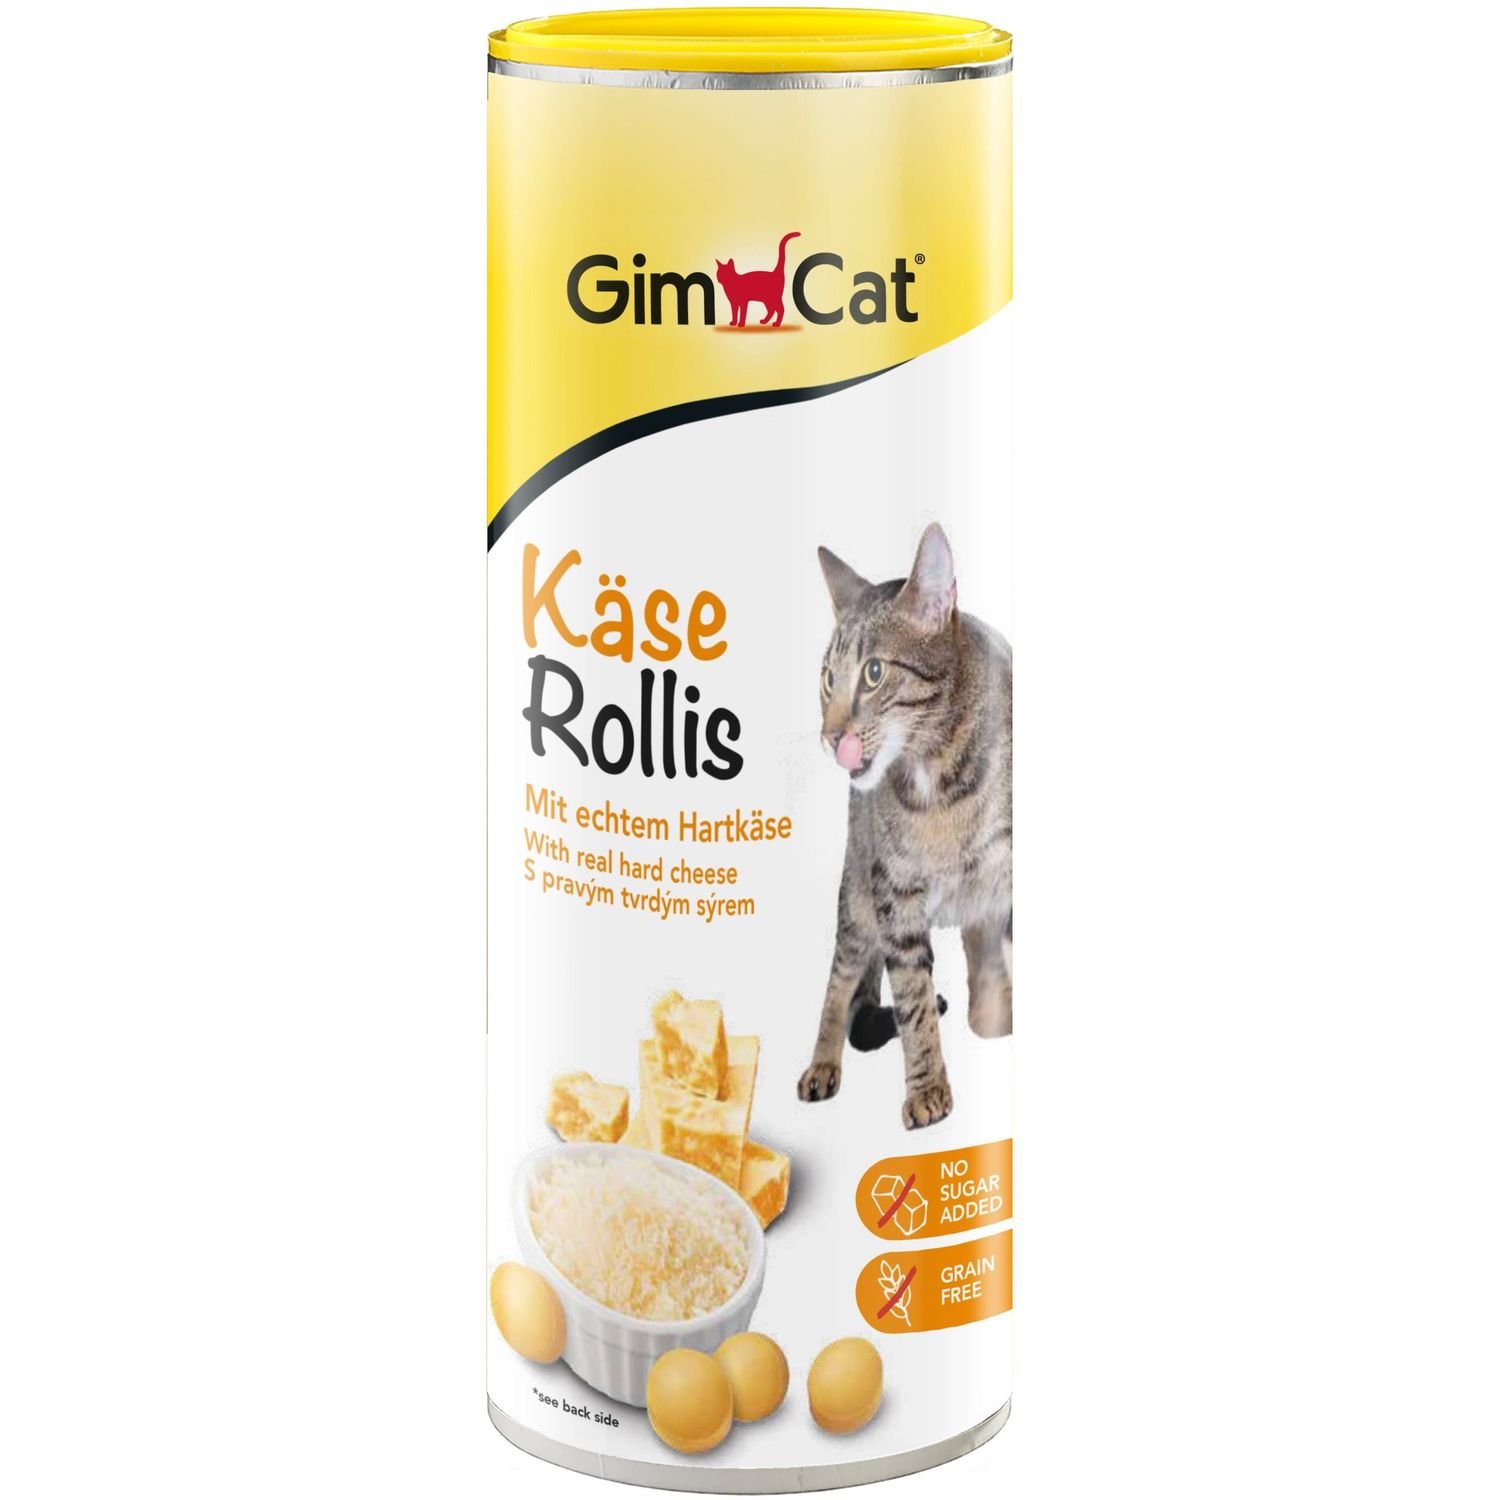 Ласощі для котів GimCat Kase-Rollis загальнозміцнюючий комплекс із сиром, 425 г - фото 1